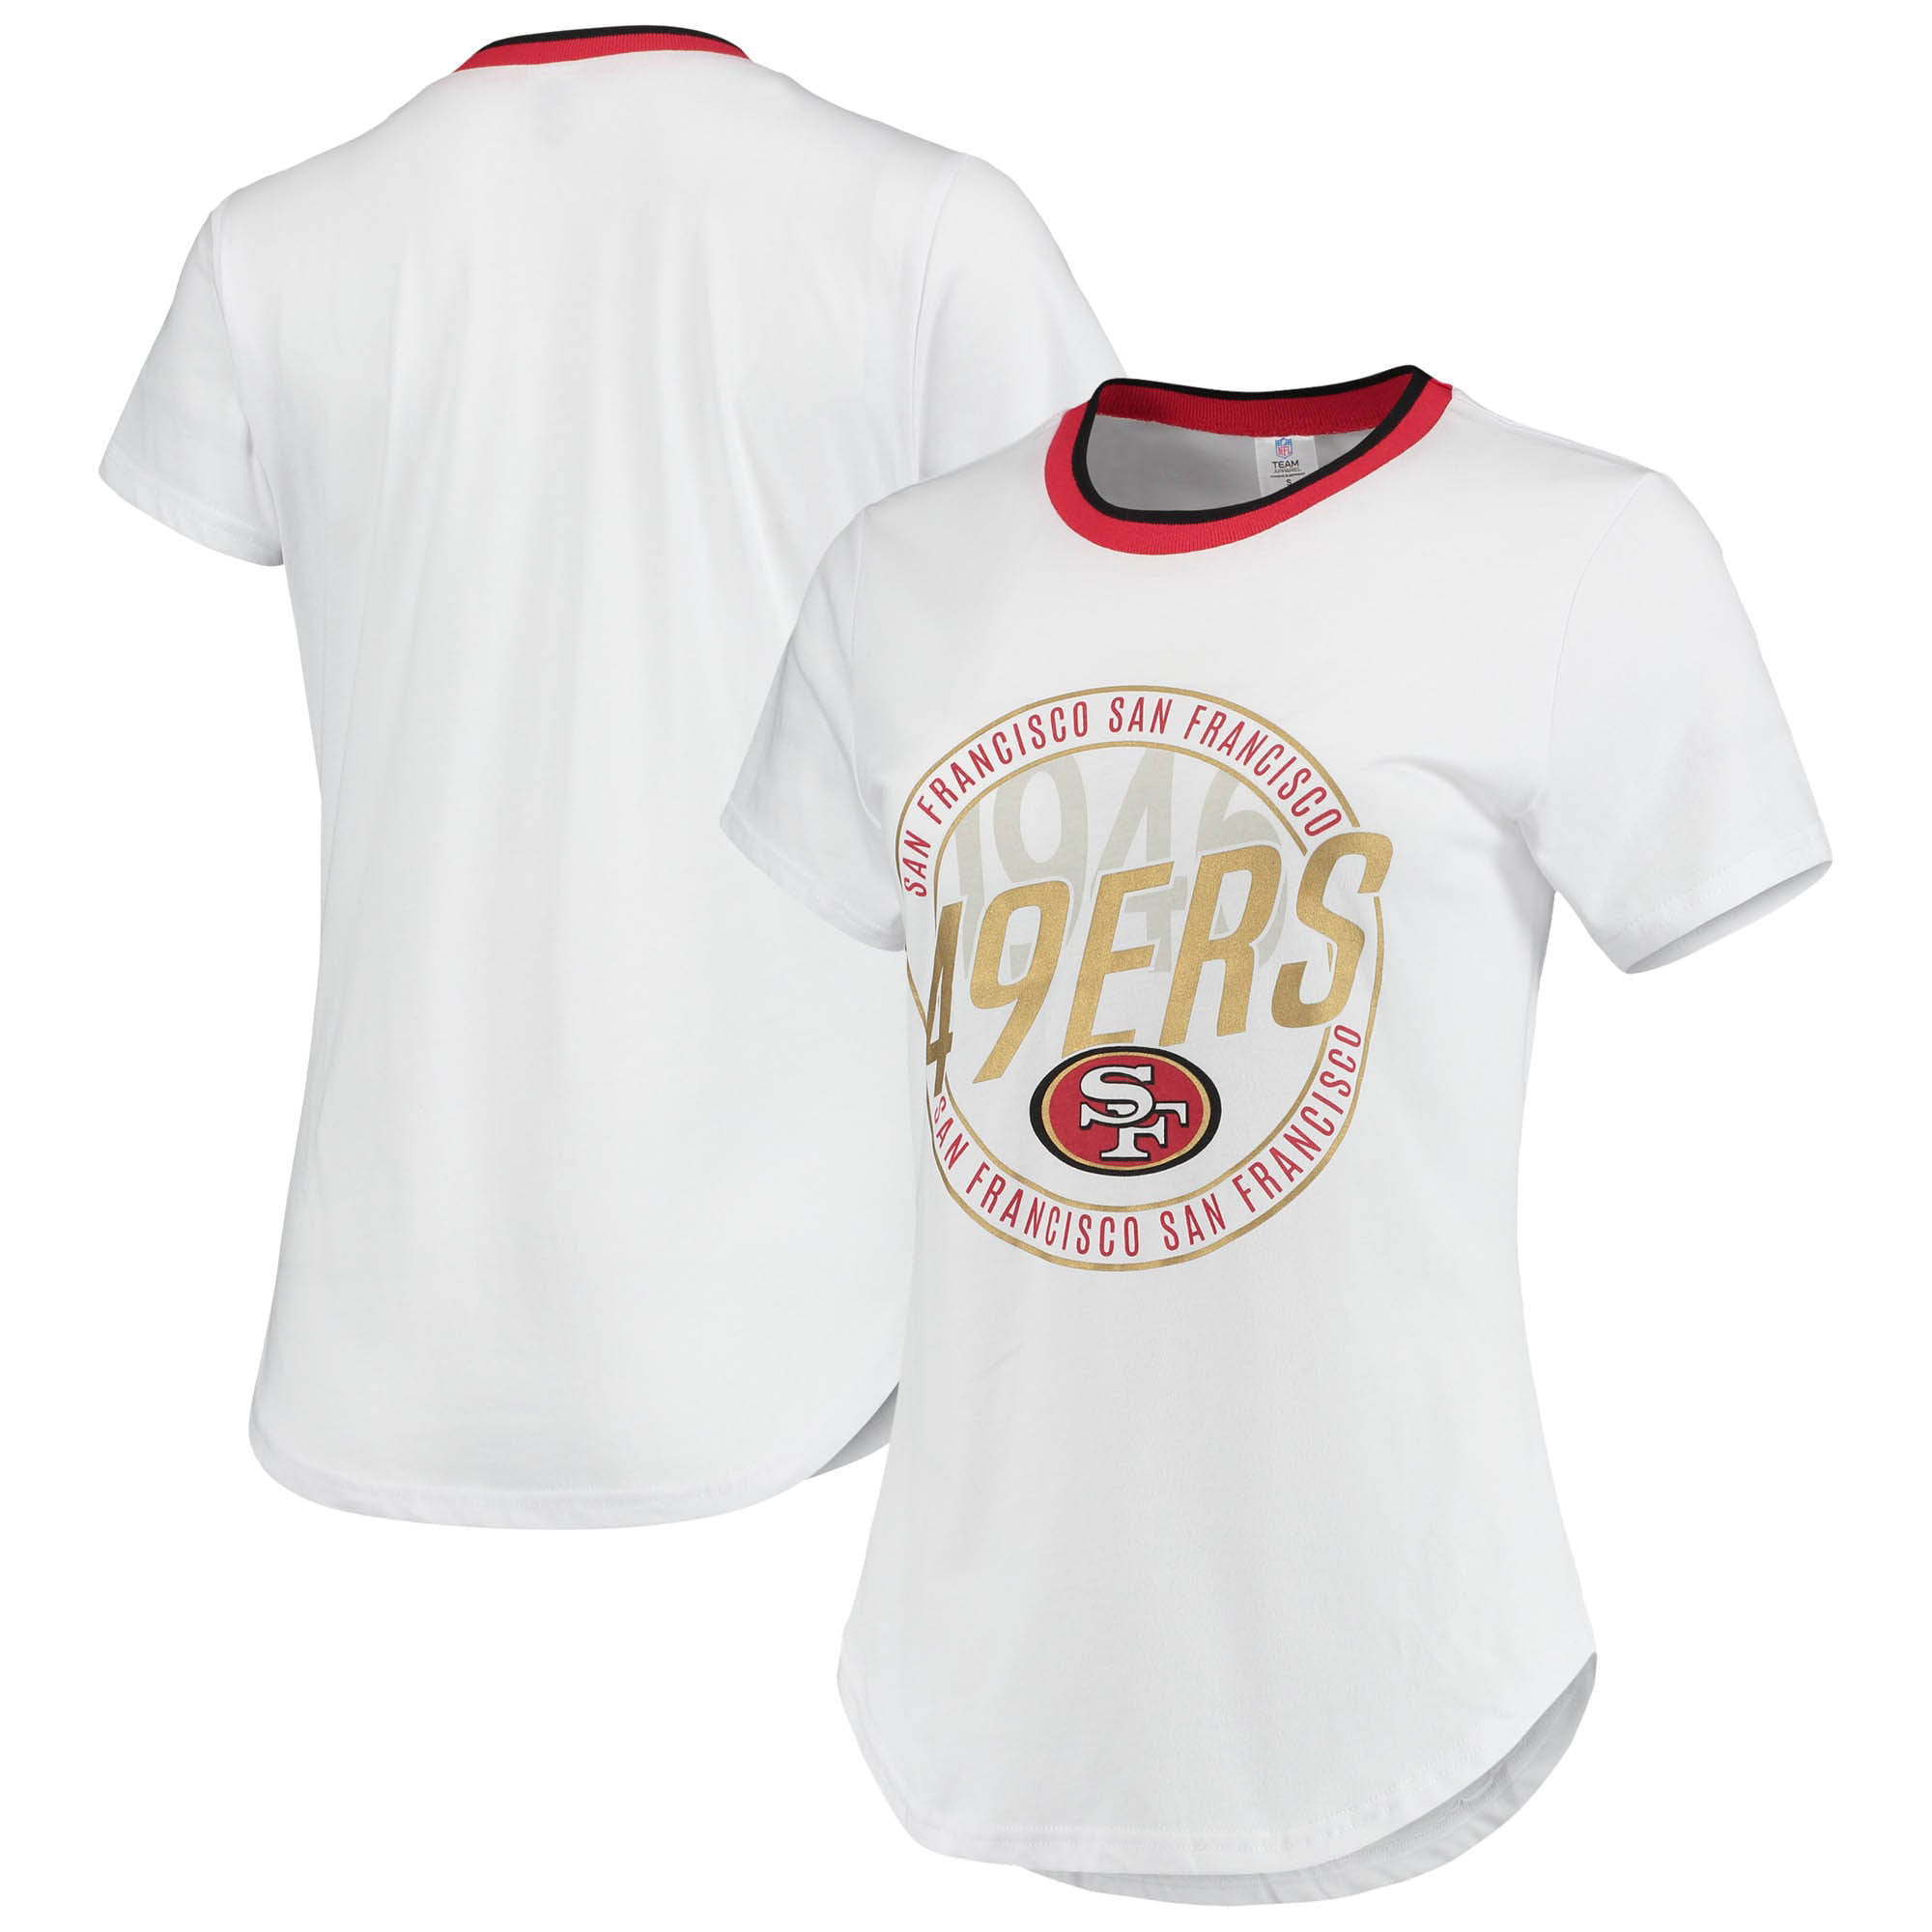 san francisco 49ers women's t shirt